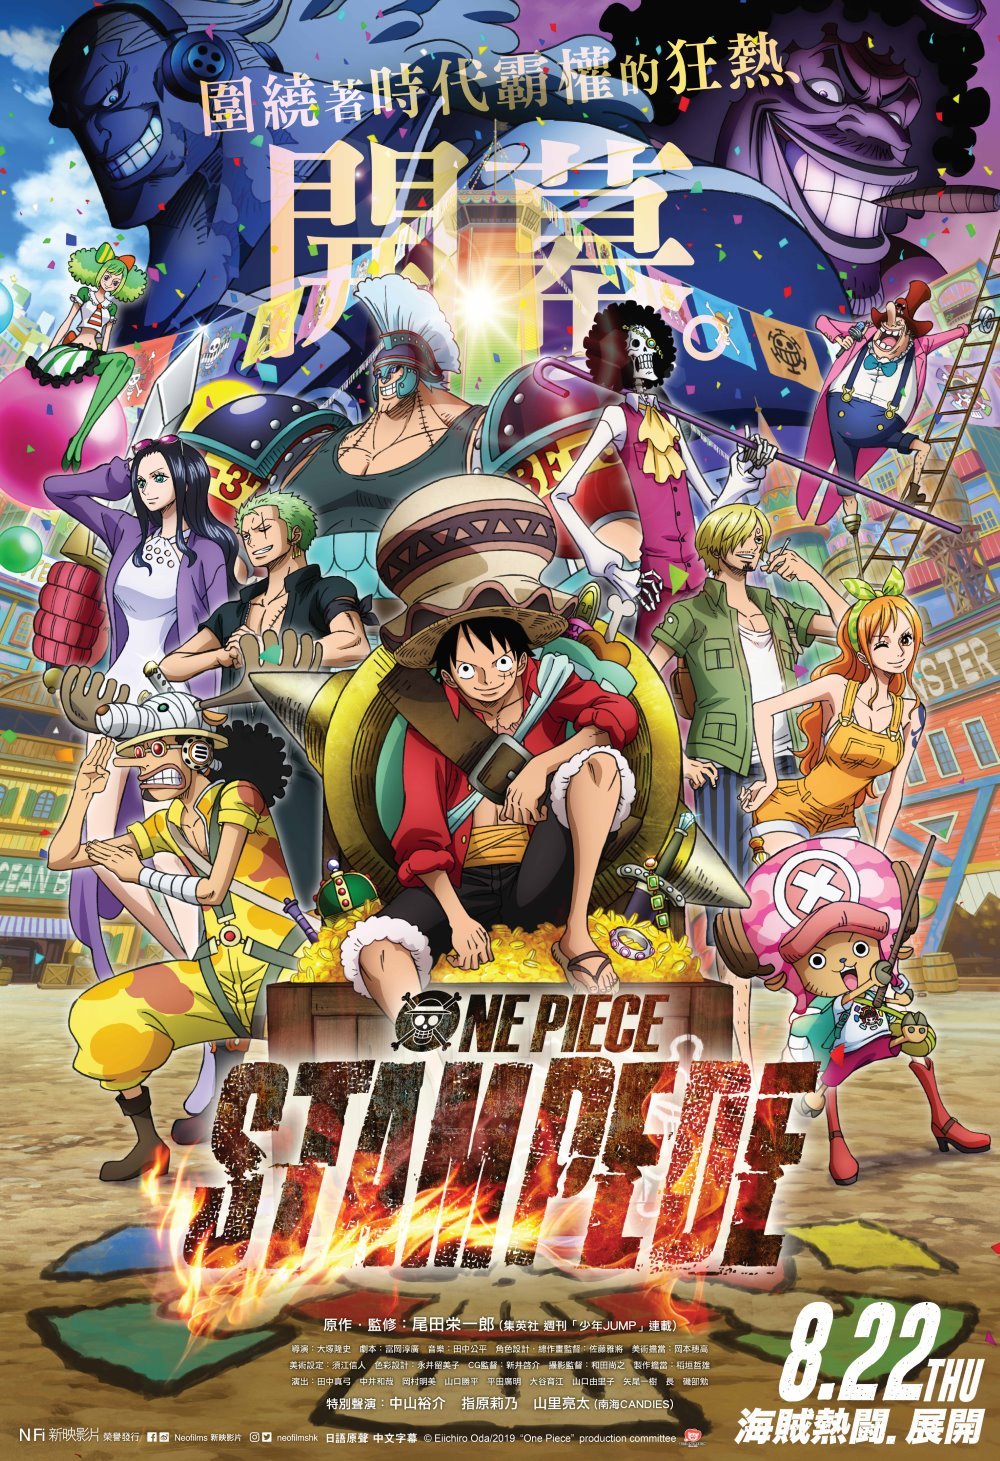 One Piece: Stampede (MX4D版)電影圖片 - ONEPIECESTAMPEDE_Keyart_1563415221.jpg